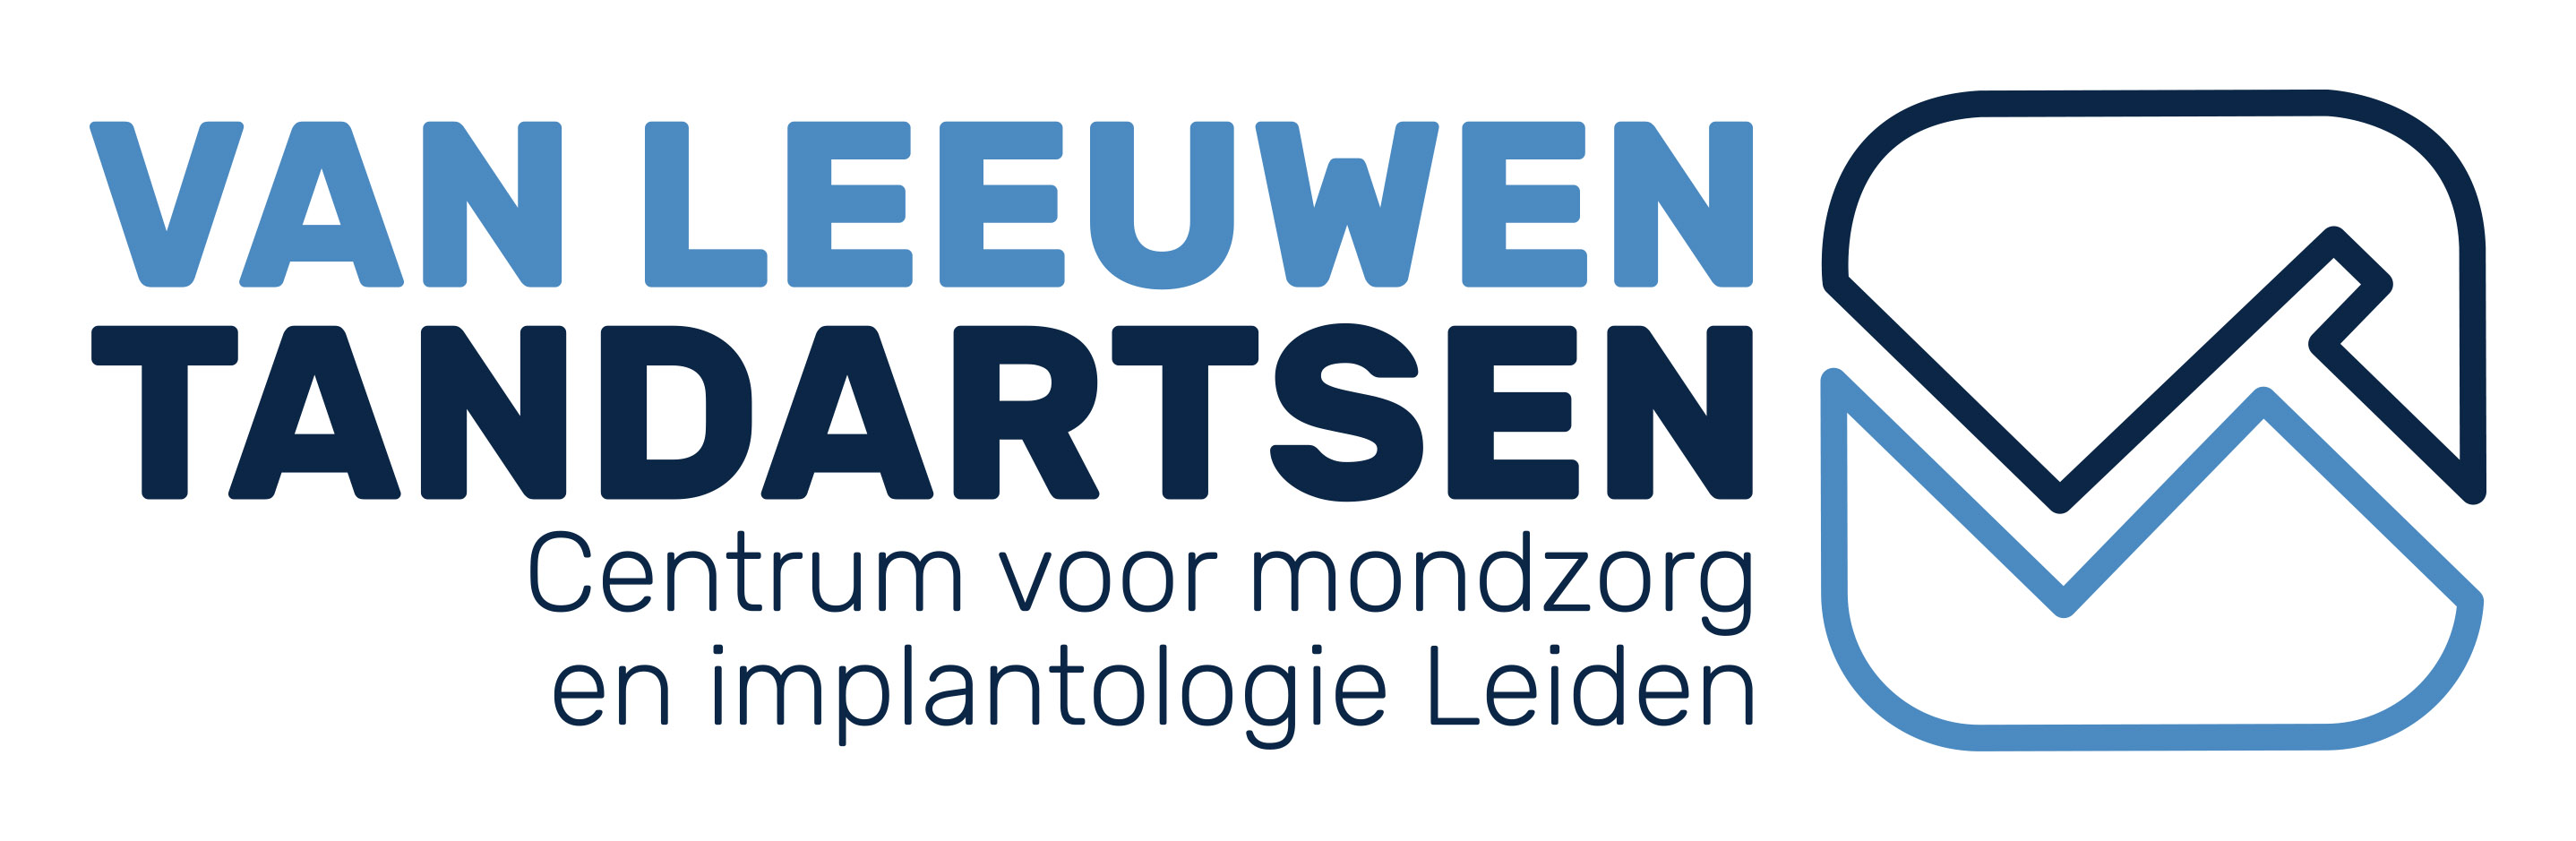 Van Leeuwen Tandartsen - centrum voor mondzorg en implantologie Leiden